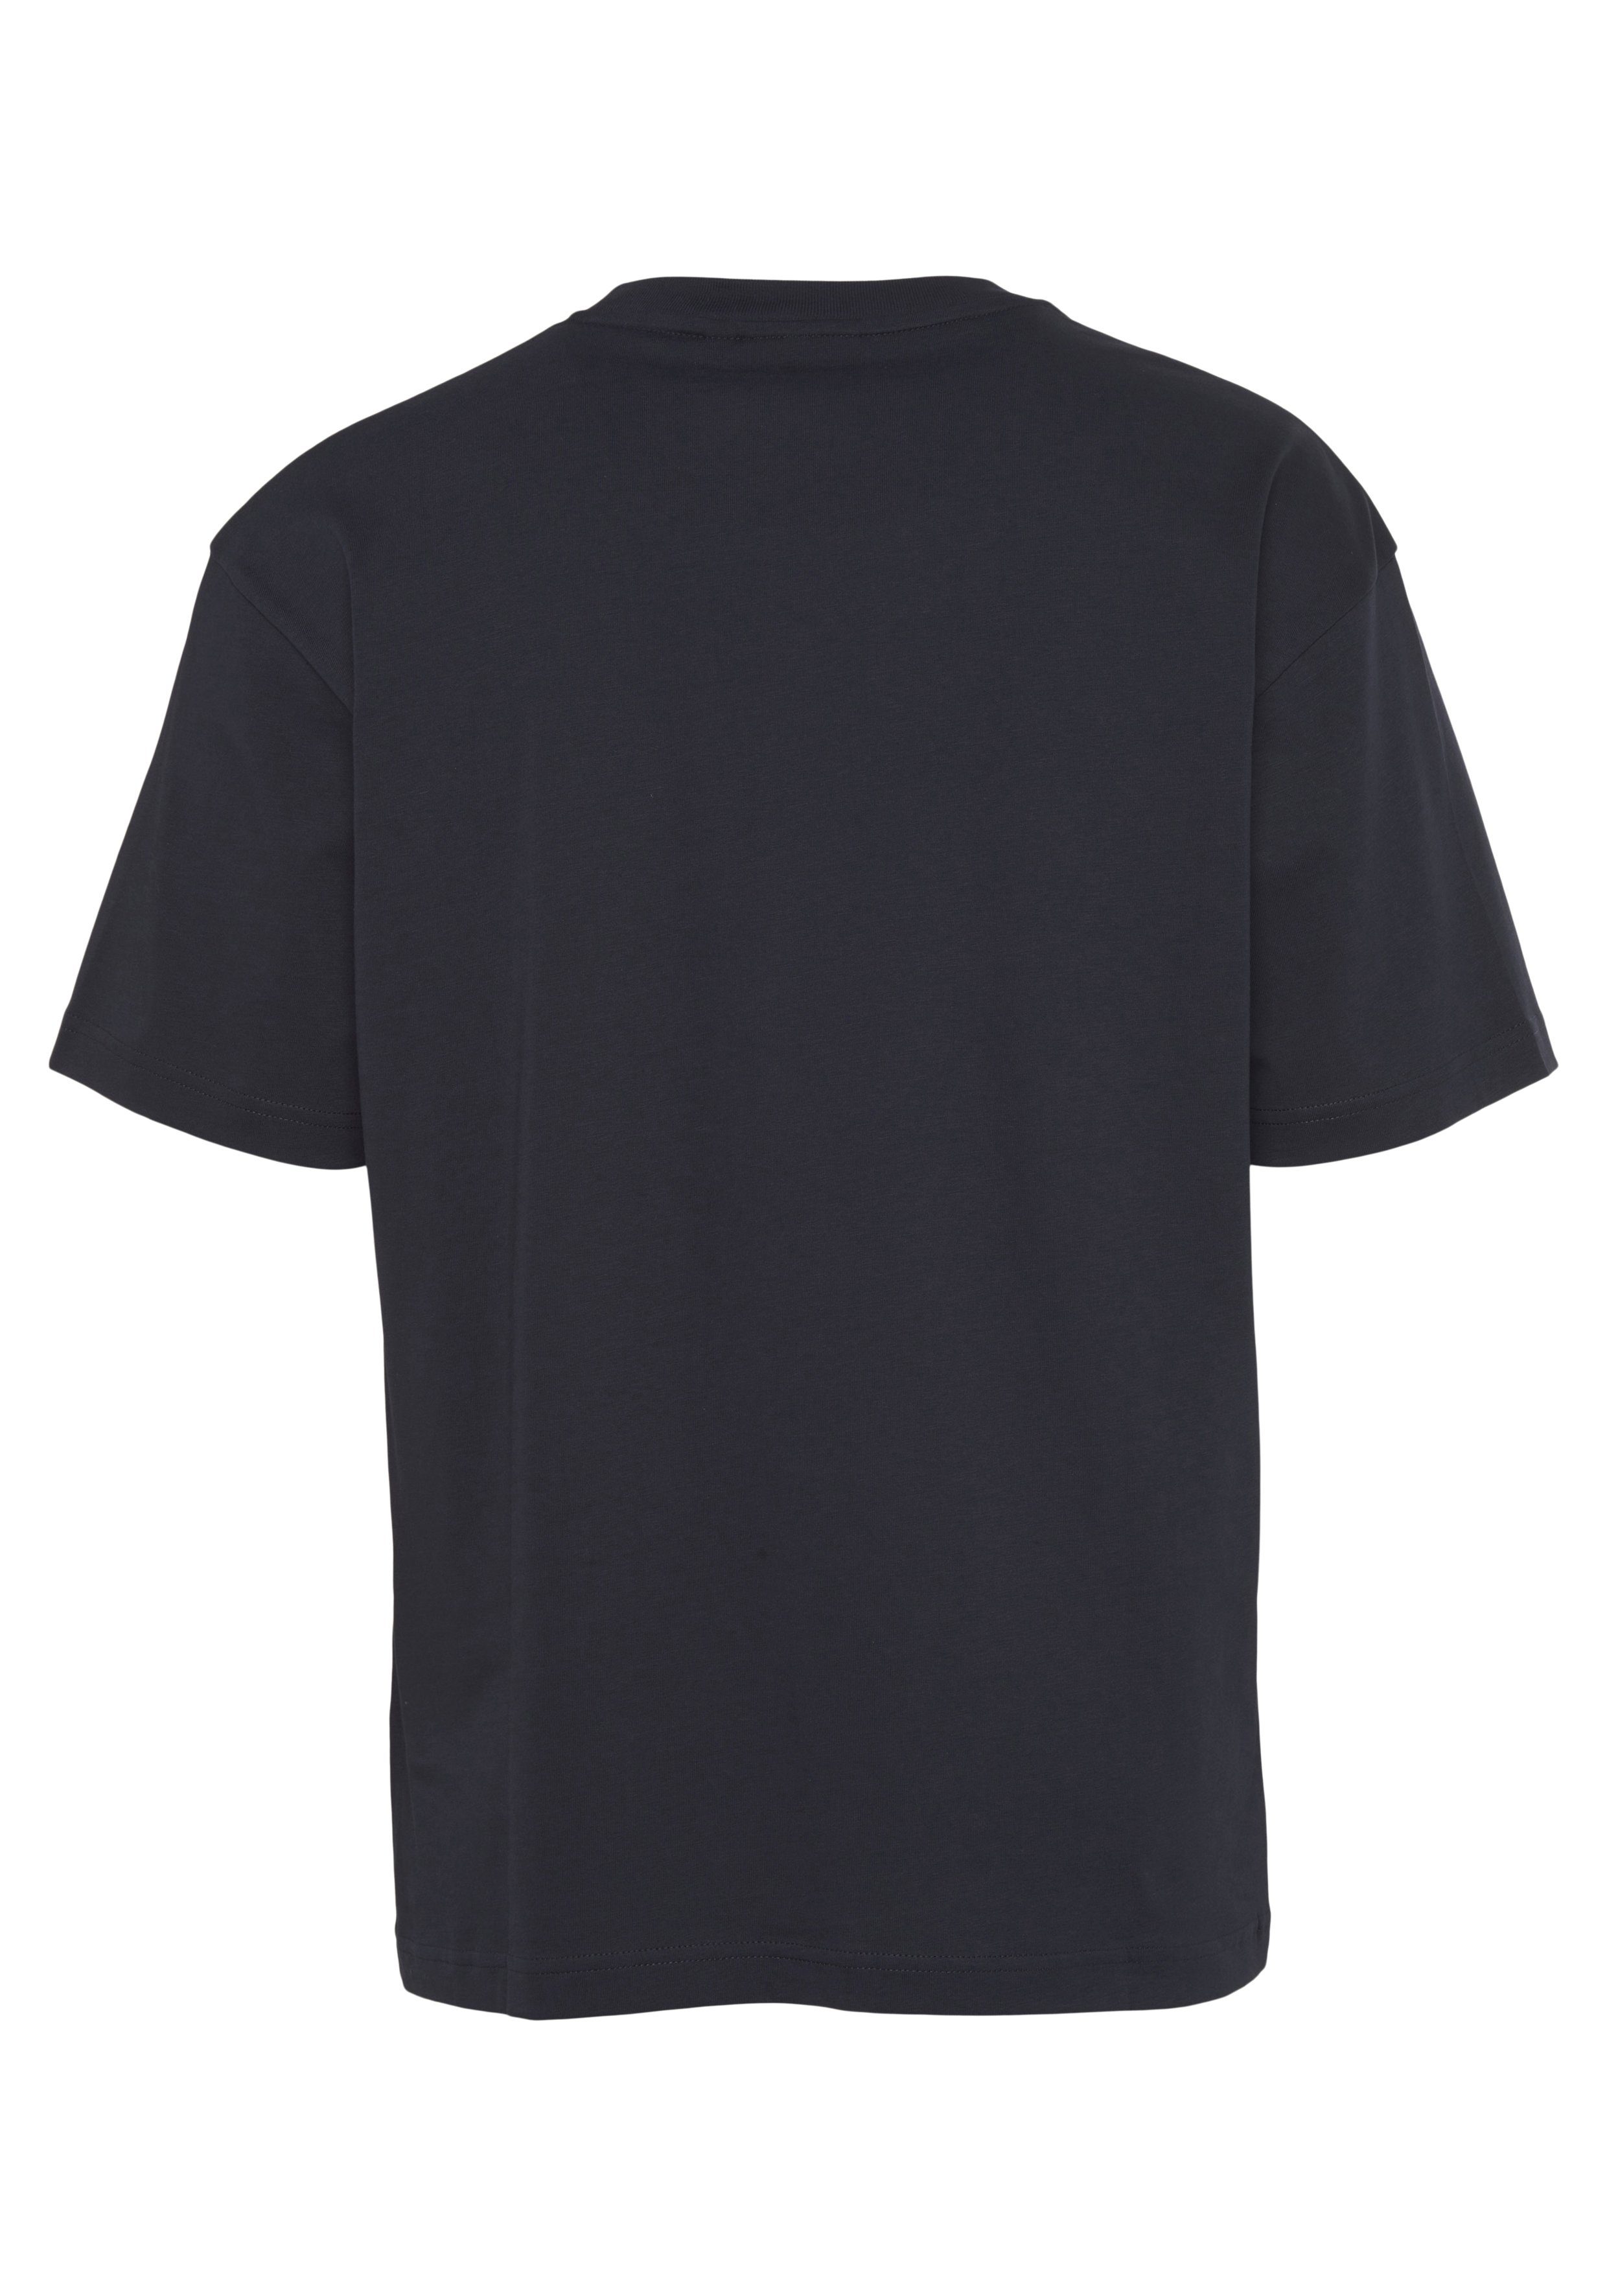 Calvin Klein T-Shirt HERO LOGO Markenlabel Night Sky COMFORT aufgedrucktem T-SHIRT mit